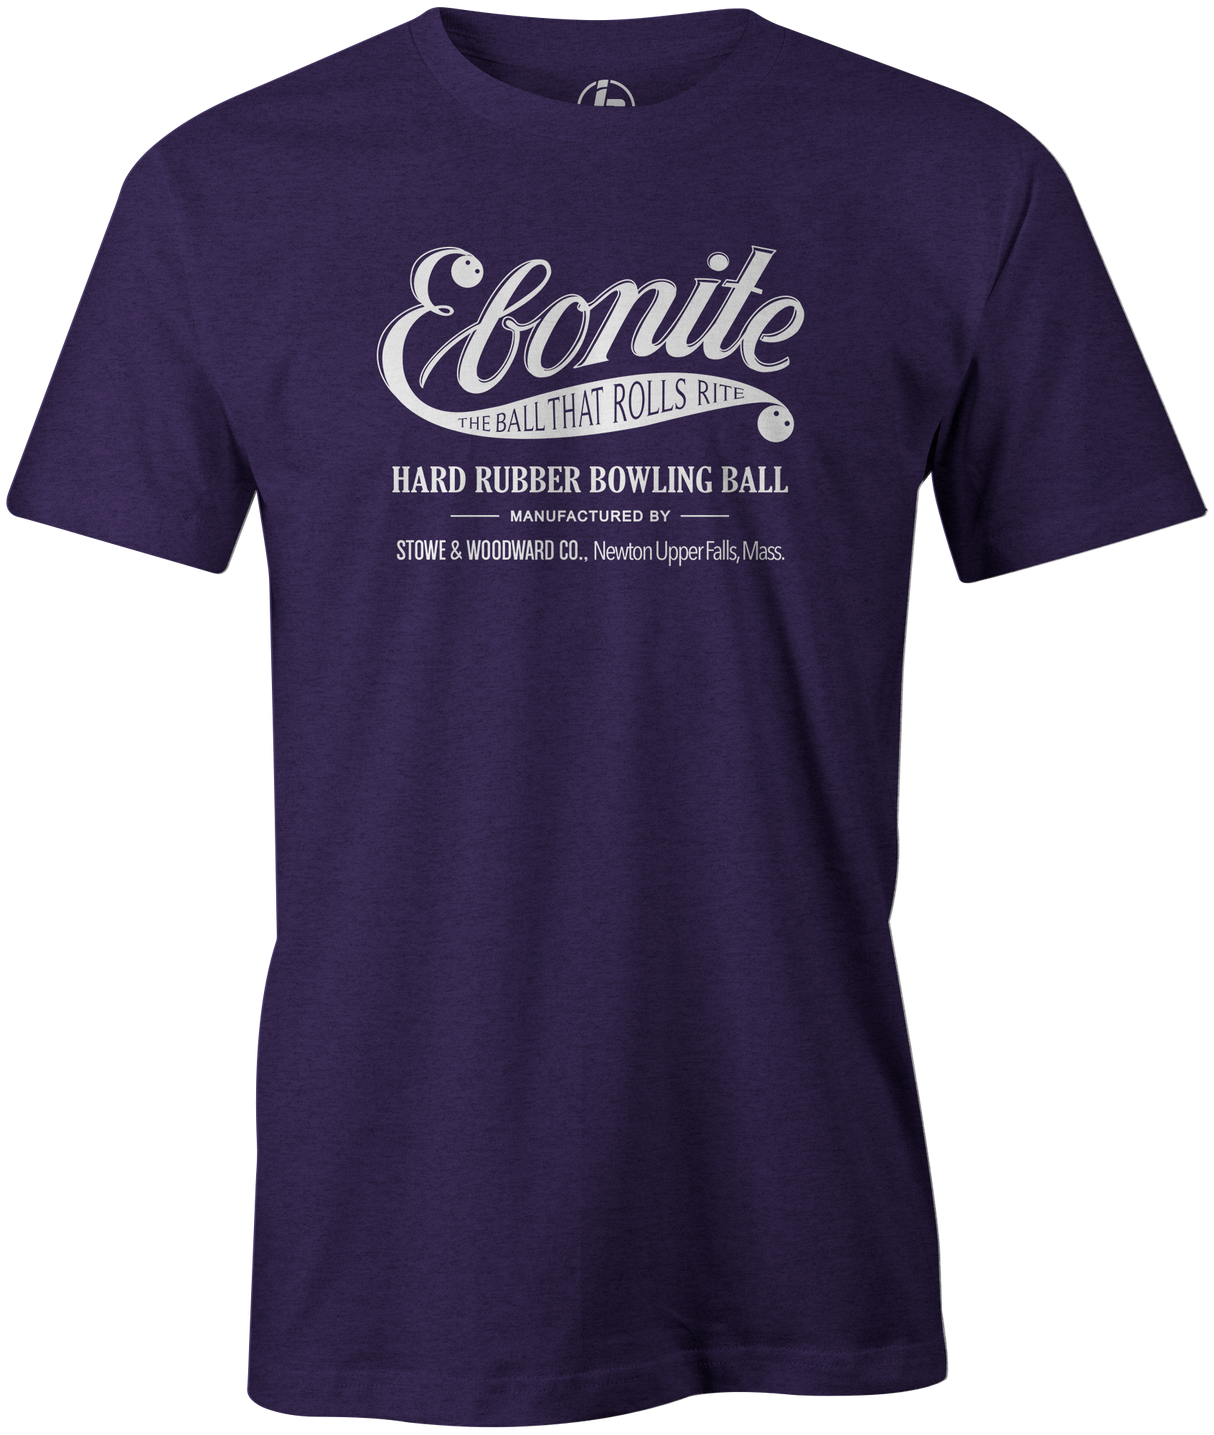 Ebonite Bowling T-Shirt Vintage Logo Purple